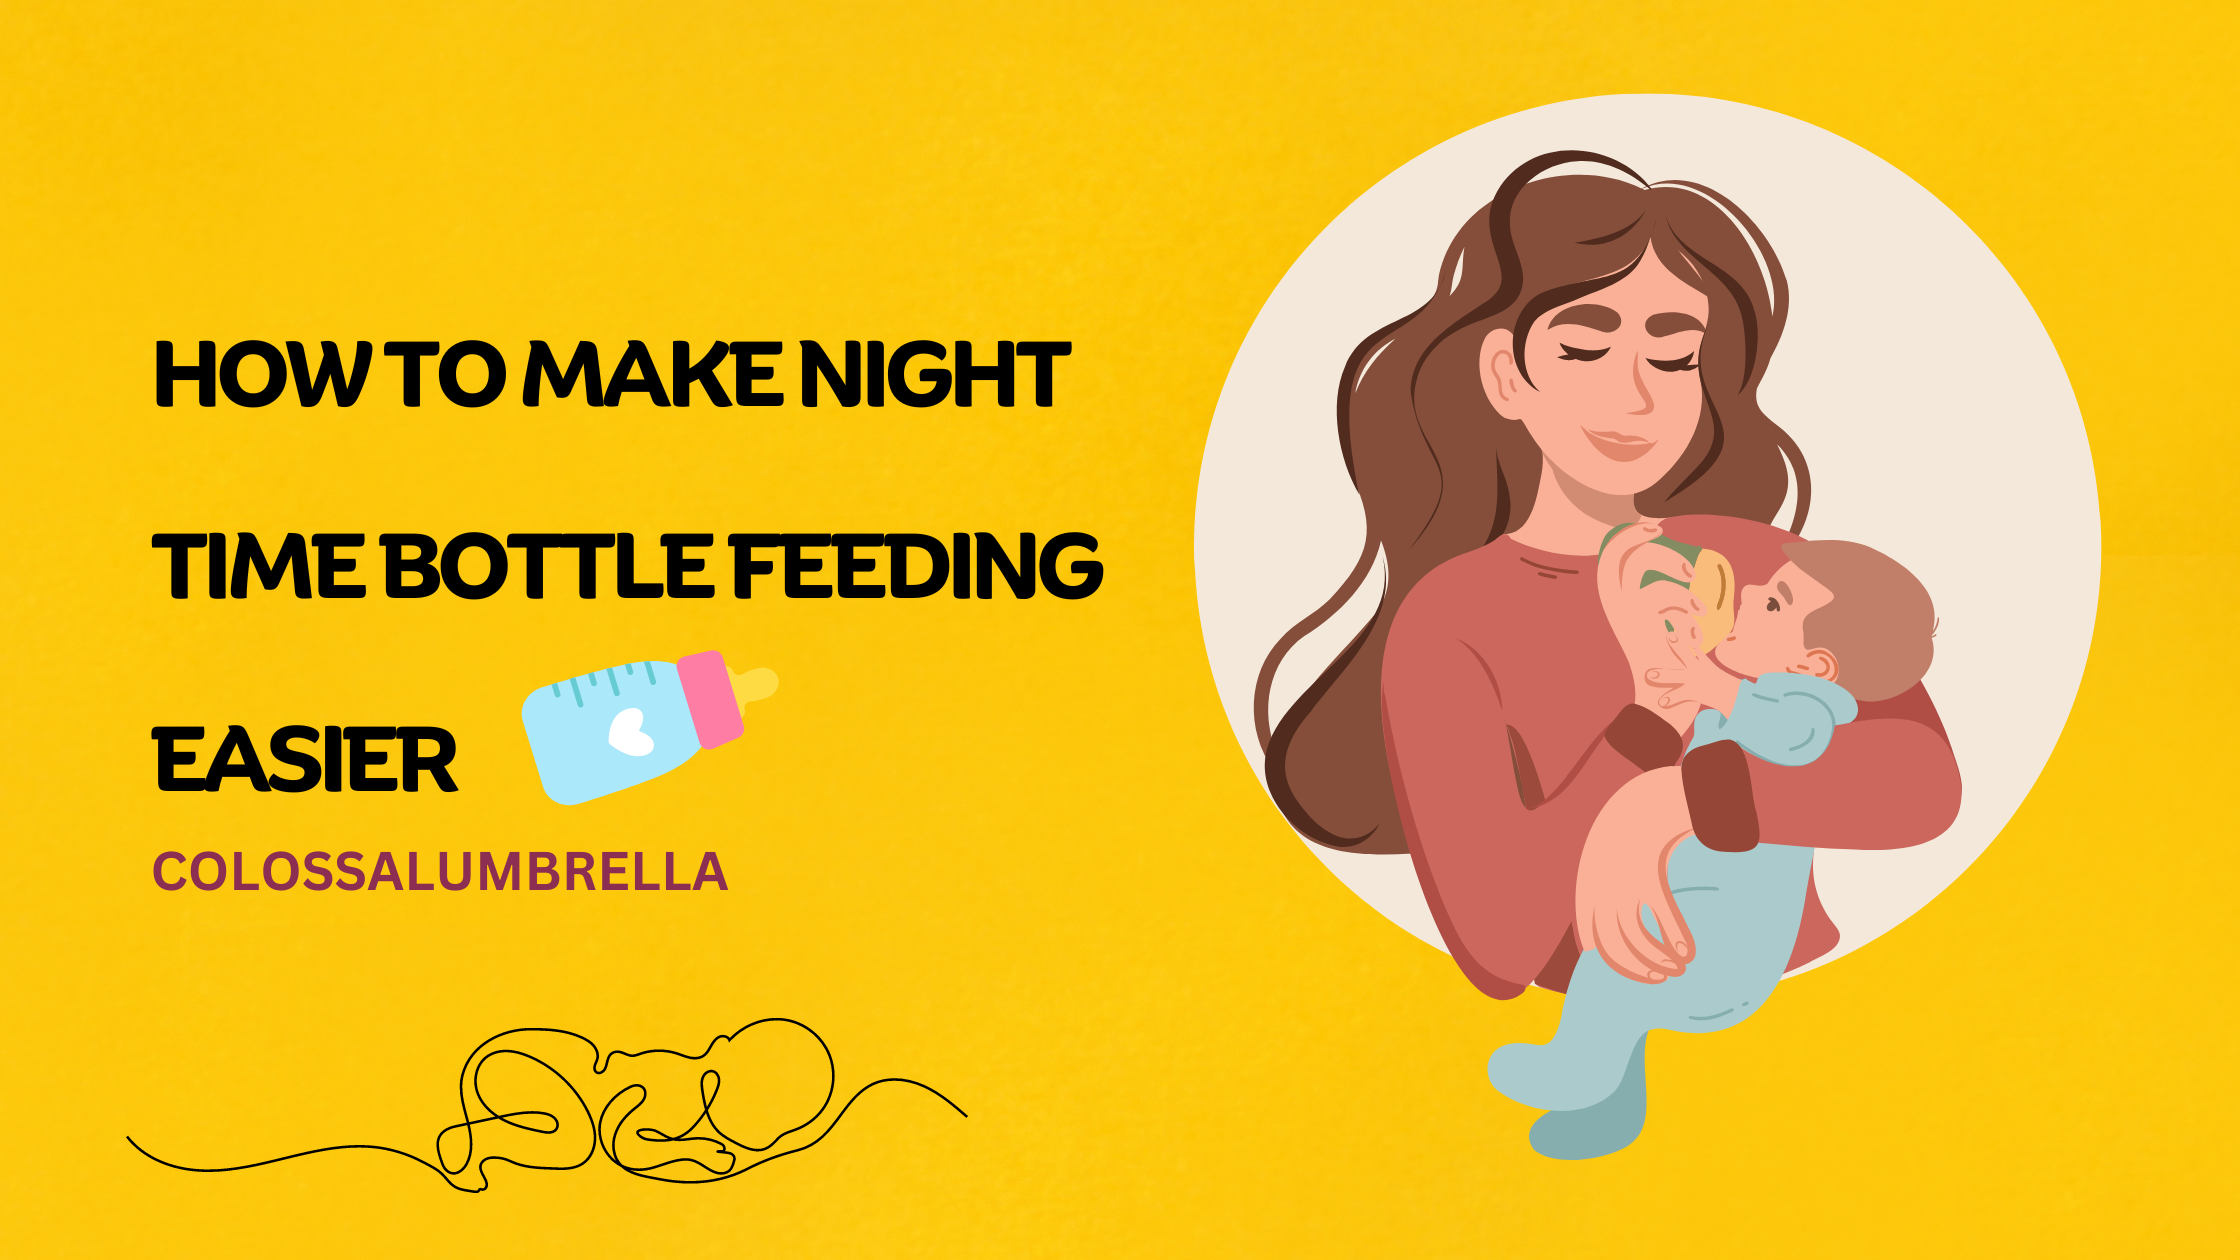 How to make night time bottle feeding easier?